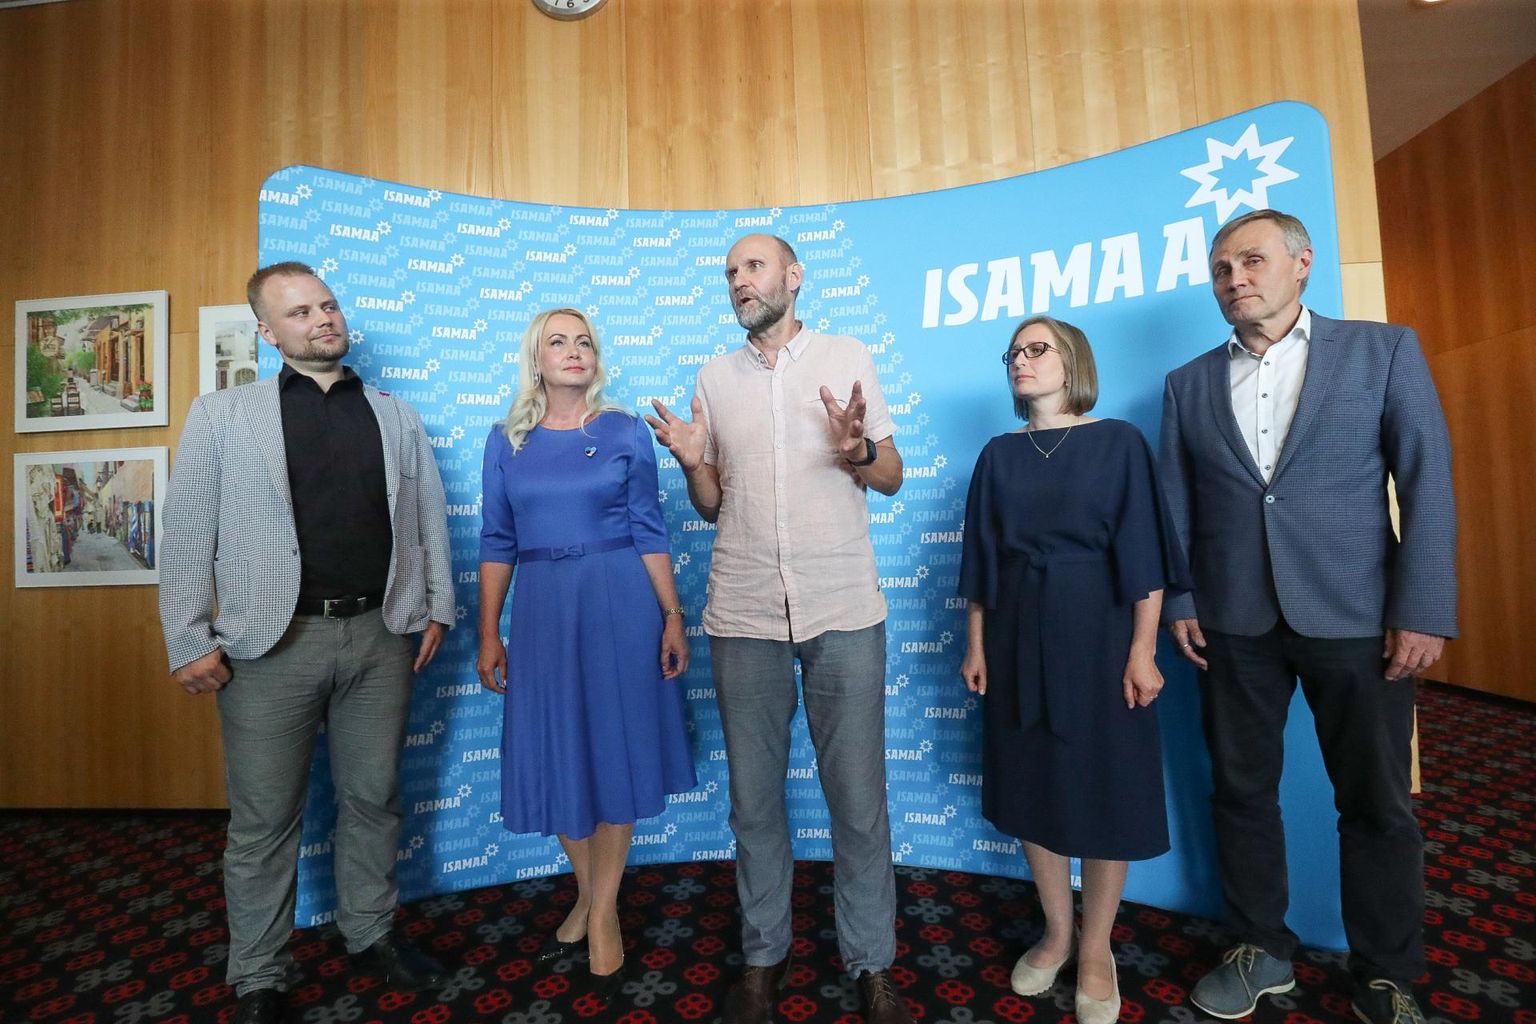 Isamaa ministrikandidaadid. Helir-Valdor Seeder (keskel) esitleb: Kristjan Järvan, Riina Solman, Lea Danilson-Järg, Tõnis Lukas.